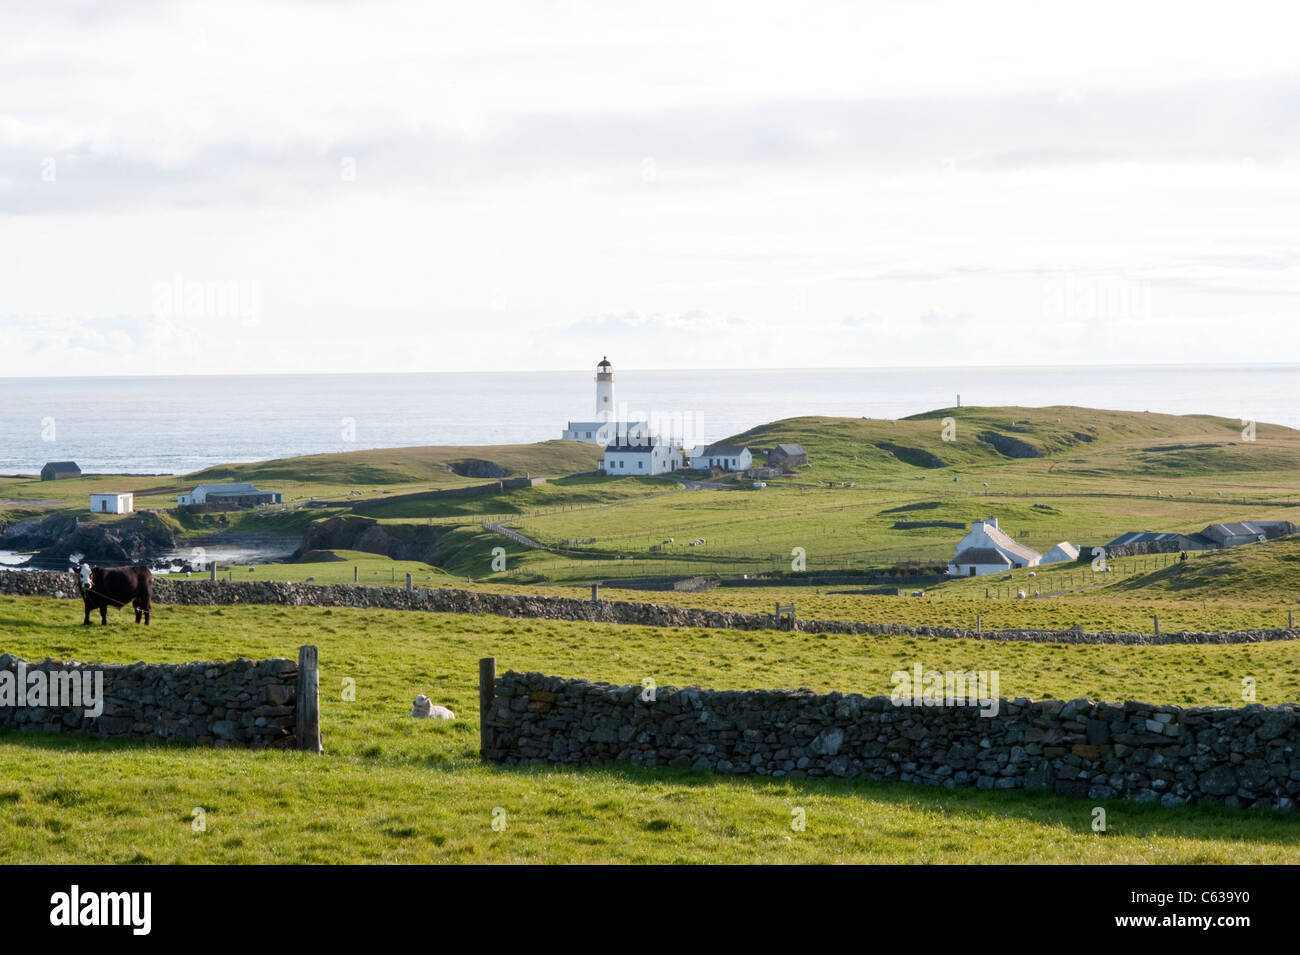 Fair-Isle Weiden mit Schafen und Bull, Leuchtturm und Croft, aufbauend auf dem Hintergrund Shetland-Inseln Schottland Großbritannien Europa Juni Stockfoto